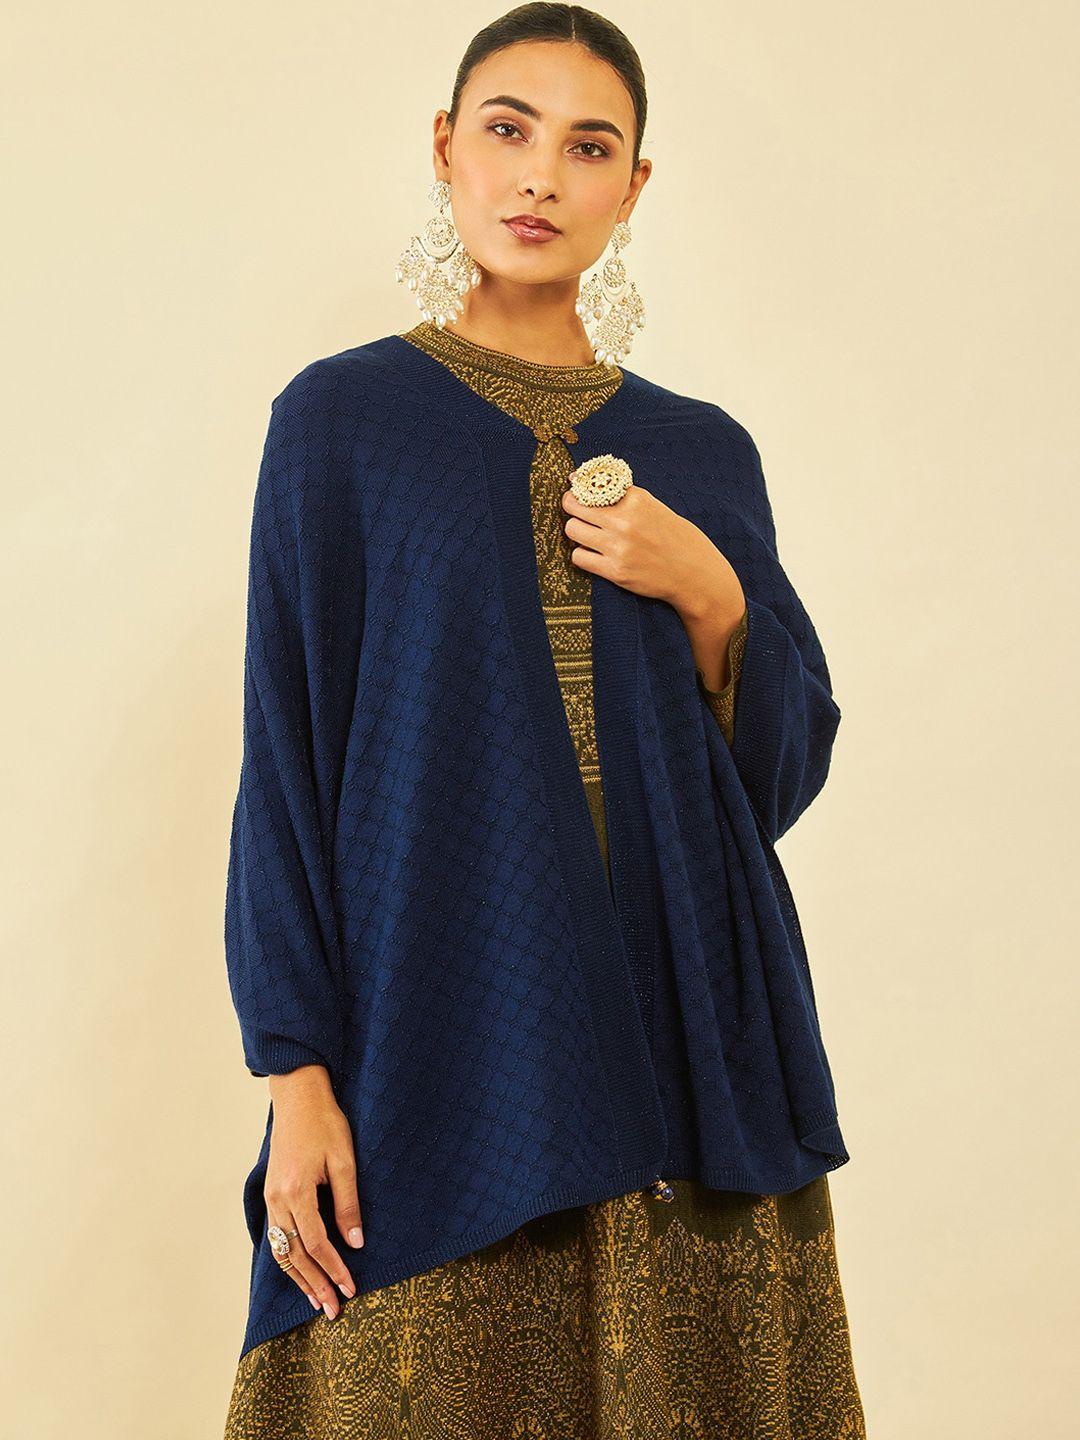 soch geometric woven design acrylic shawl